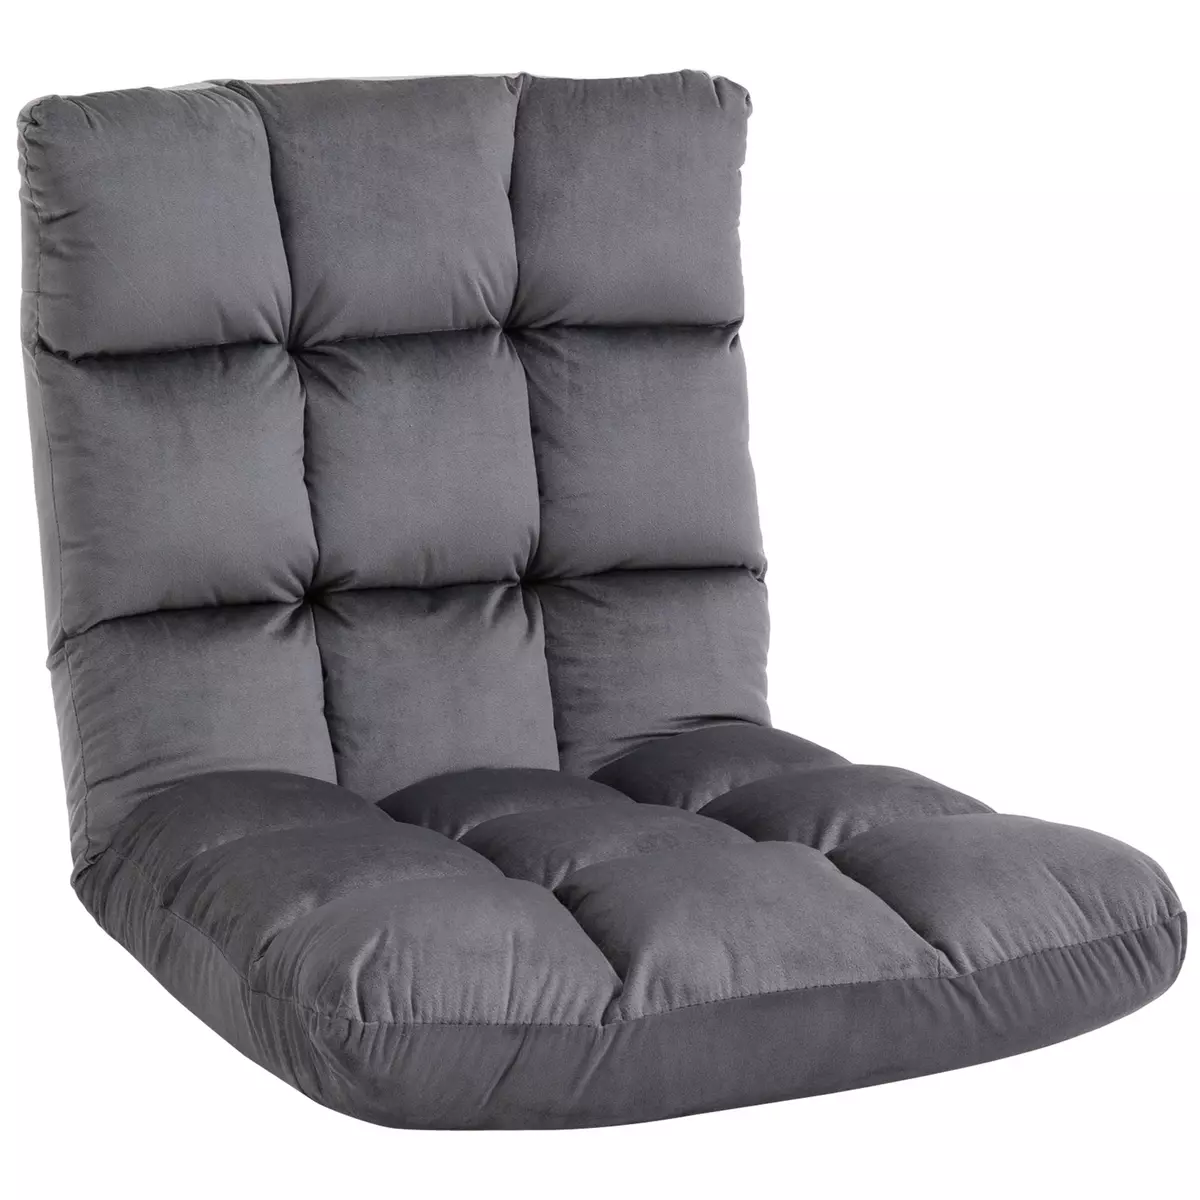 HOMCOM Fauteuil convertible fauteuil paresseux grand confort inclinaison dossier multipositions 90°-180° flanelle polyester capitonné gris foncé